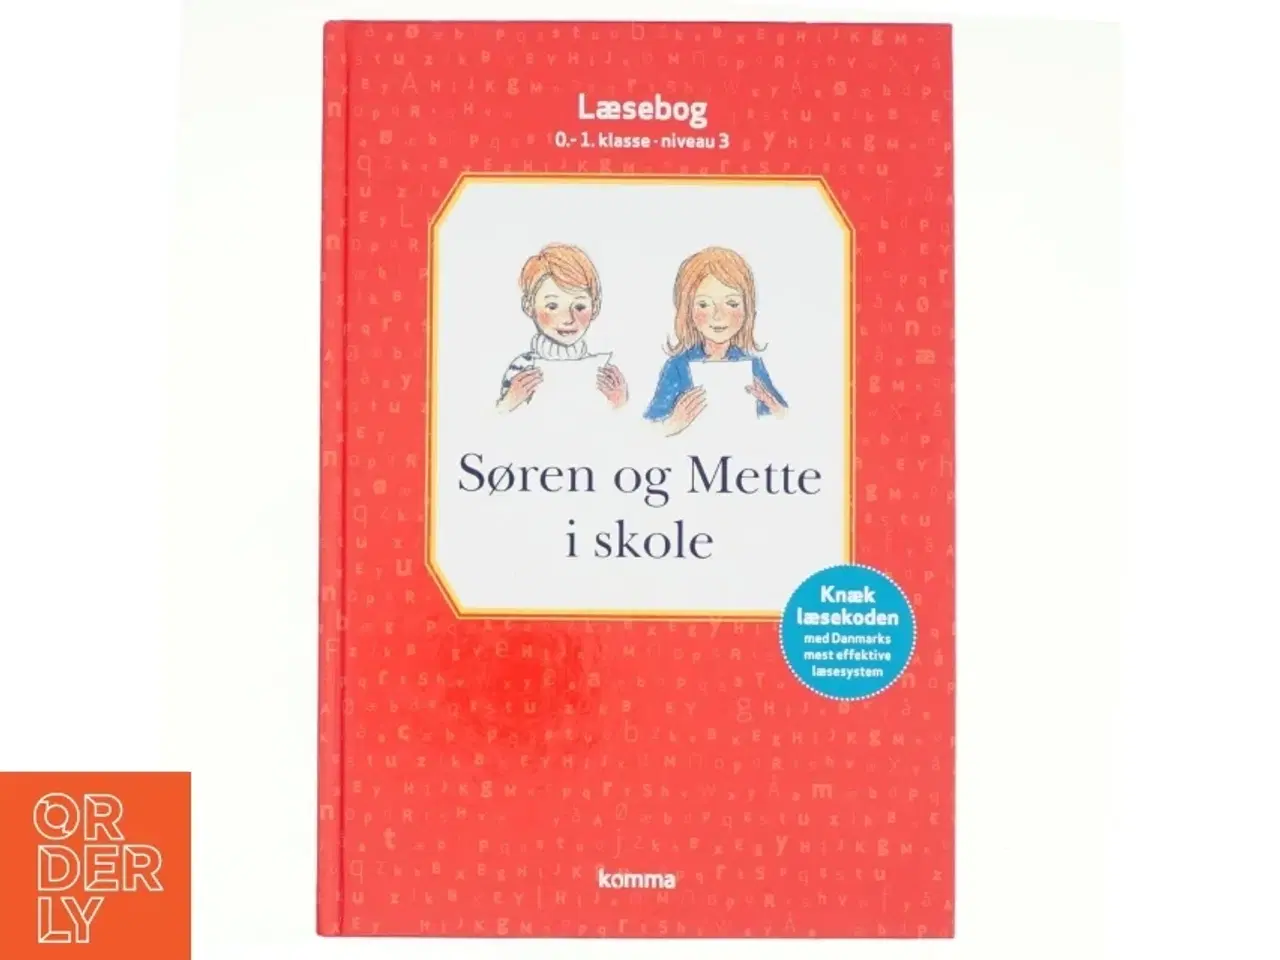 Billede 1 - Søren og Mette i skole : læsebog, 0-1. klasse - niveau 3 (Ill. Otto S., og Bregnhøi) (Bog)